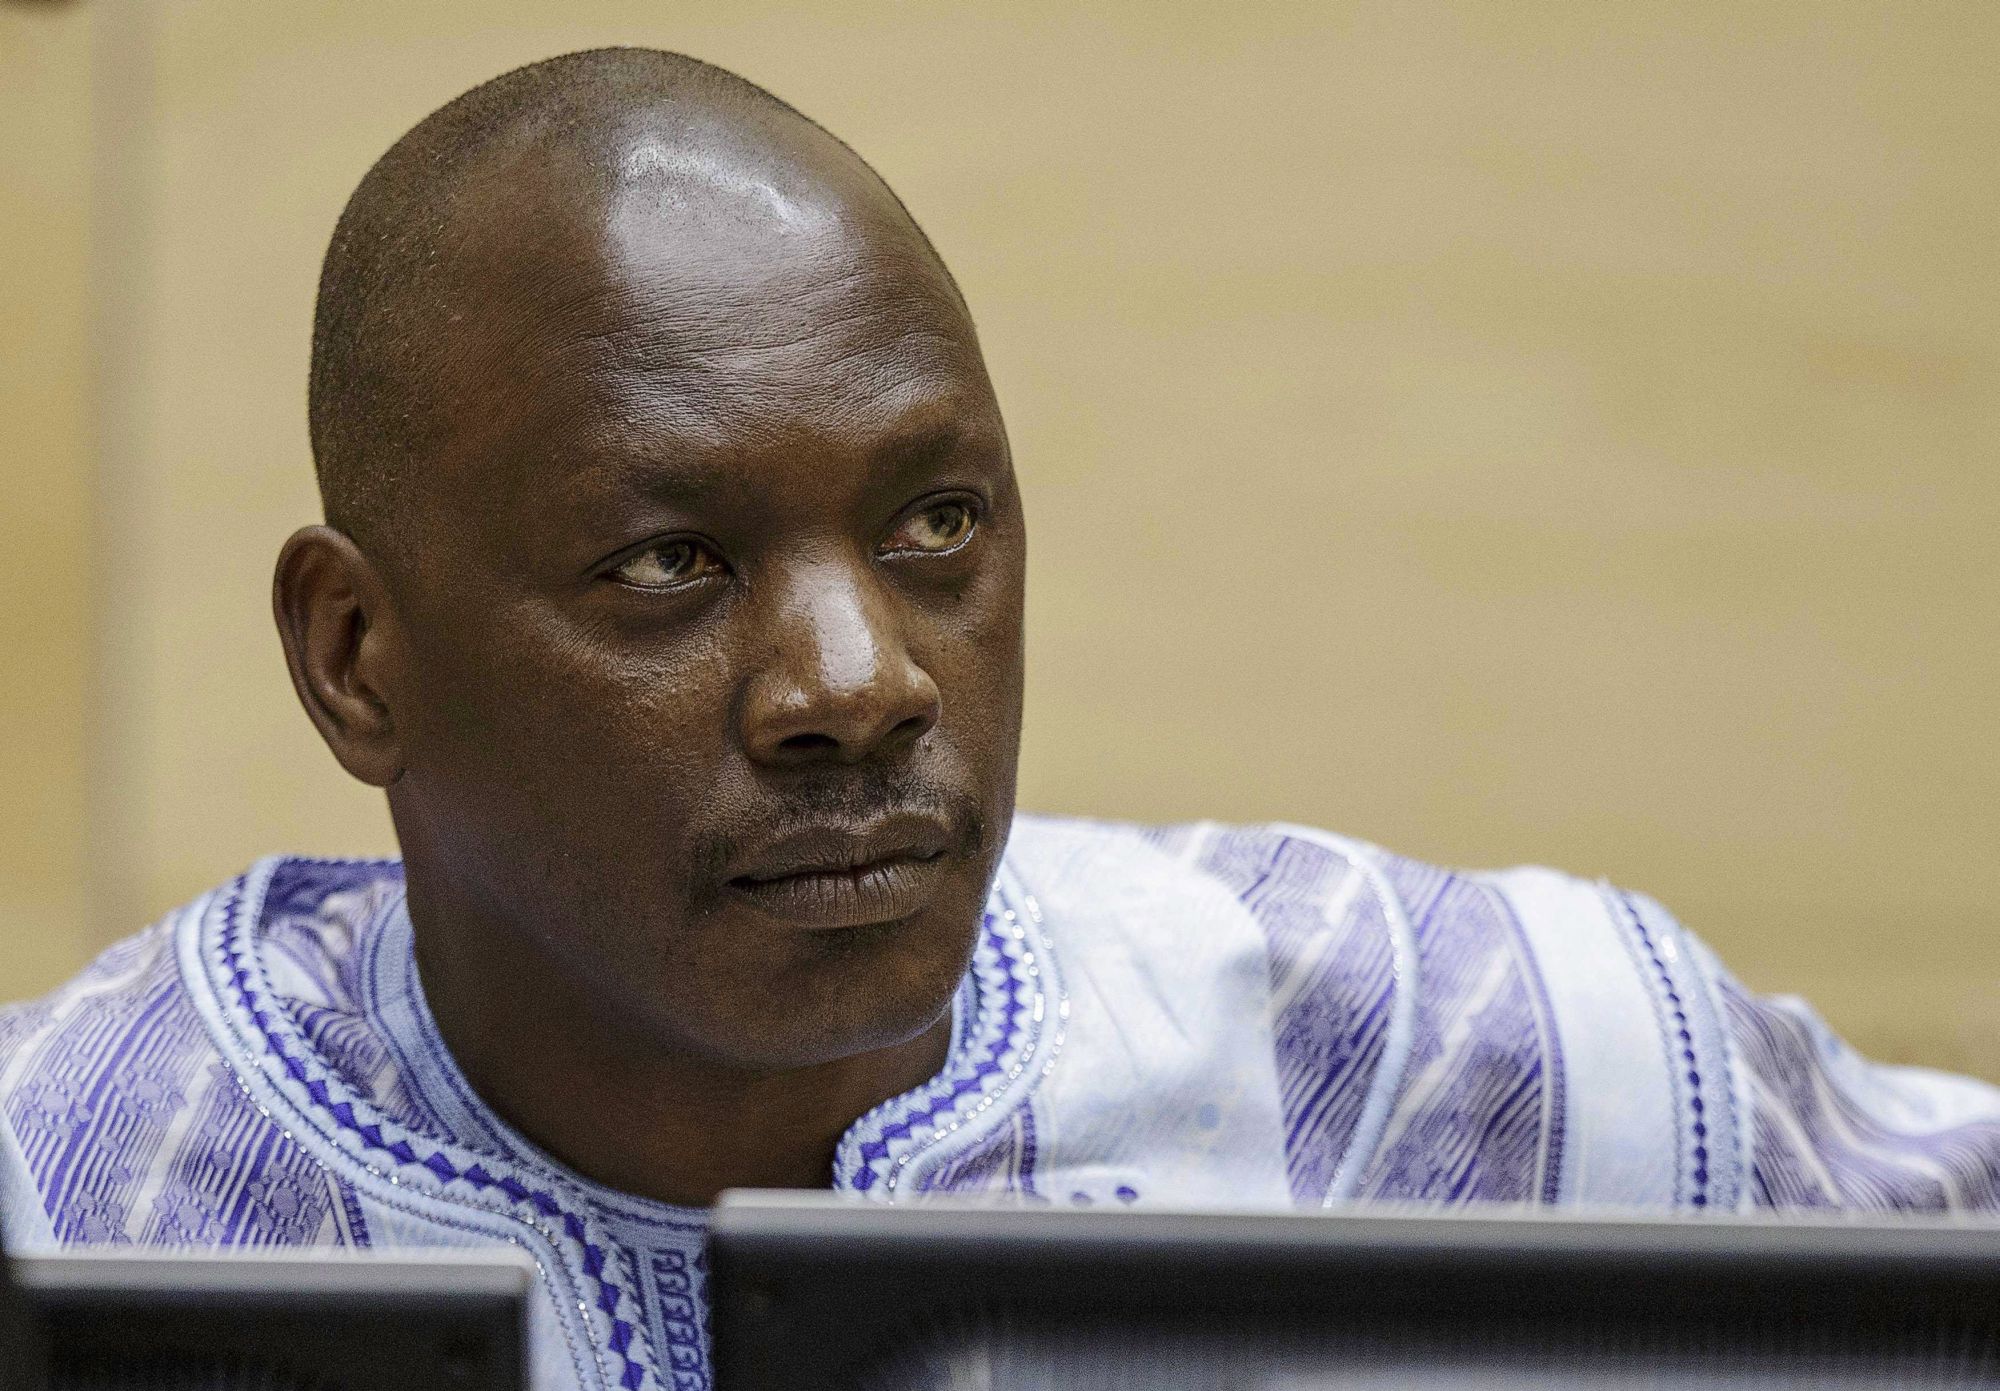 Hága, 2014. december 1. Thomas Lubanga kongói milíciavezér részt vesz a háborús bűnök kivizsgálására létrehozott Nemzetközi Büntetőbíróság (ICC) ítélethirdetésén Hágában 2014. december elsején. A most 53 éves Lubangát 2012-ben tizennégy évi szabadságvesztésre ítélte a Nemzetközi Büntetőbíróság, amiért a 2002-2003-as összecsapások idején 15 évesnél fiatalabb gyermekeket sorozott be a Kongói Hazafiak Frontja (UPC) szervezet katonai szárnyába, a Kongó Felszabadítása Hazafias Erőinek (FPLC) egységeibe. A fiatalok nagy részét a frontvonalba küldték harcolni, sokan elestek közülük. (MTI/EPA/Pool/Michael Kooren)